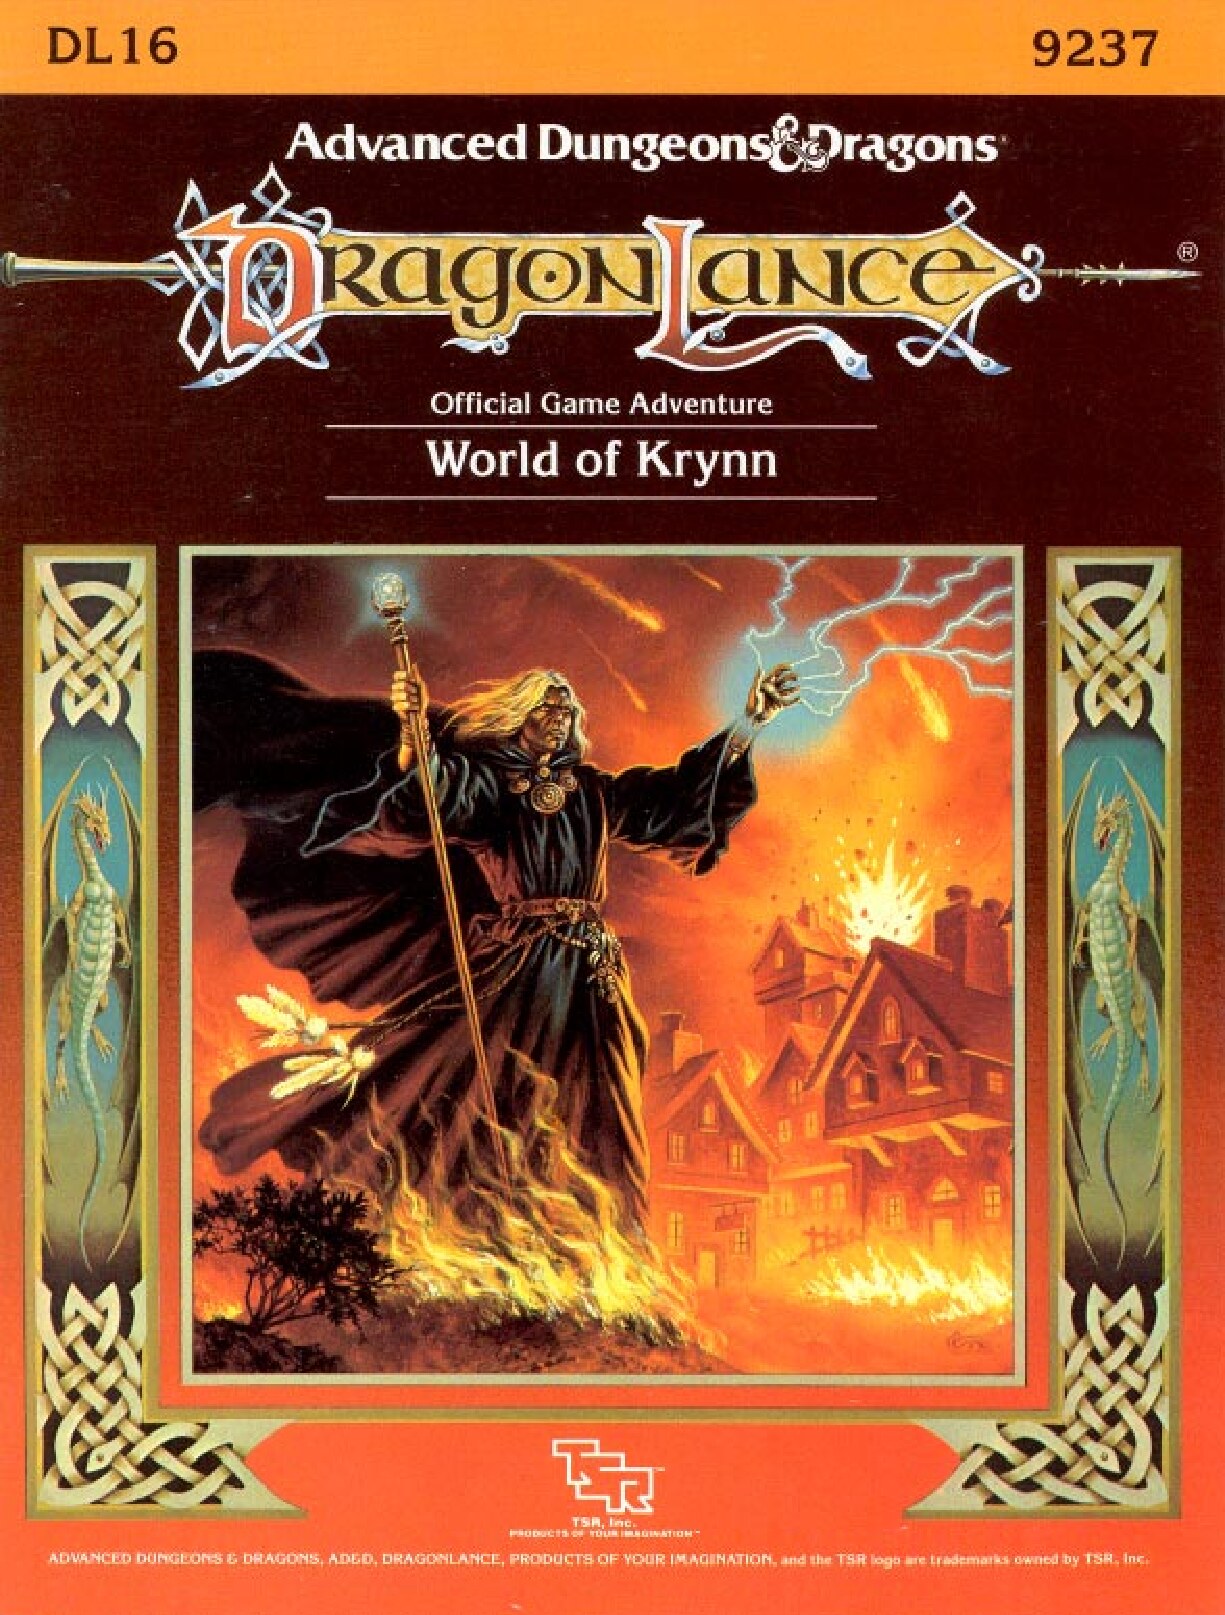 World of Krynn